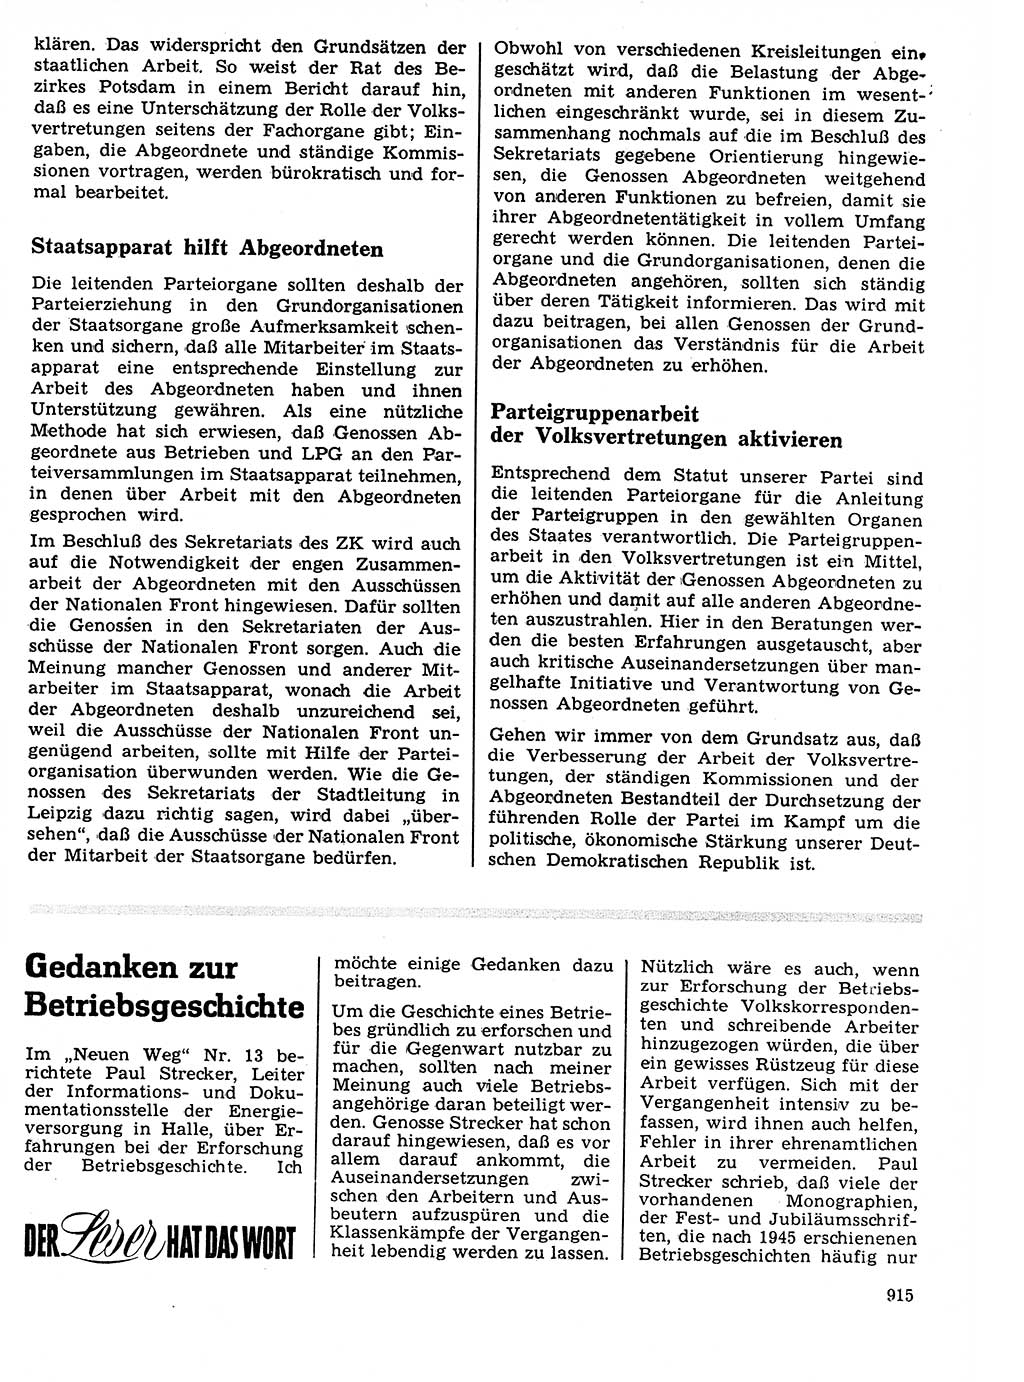 Neuer Weg (NW), Organ des Zentralkomitees (ZK) der SED (Sozialistische Einheitspartei Deutschlands) für Fragen des Parteilebens, 21. Jahrgang [Deutsche Demokratische Republik (DDR)] 1966, Seite 915 (NW ZK SED DDR 1966, S. 915)